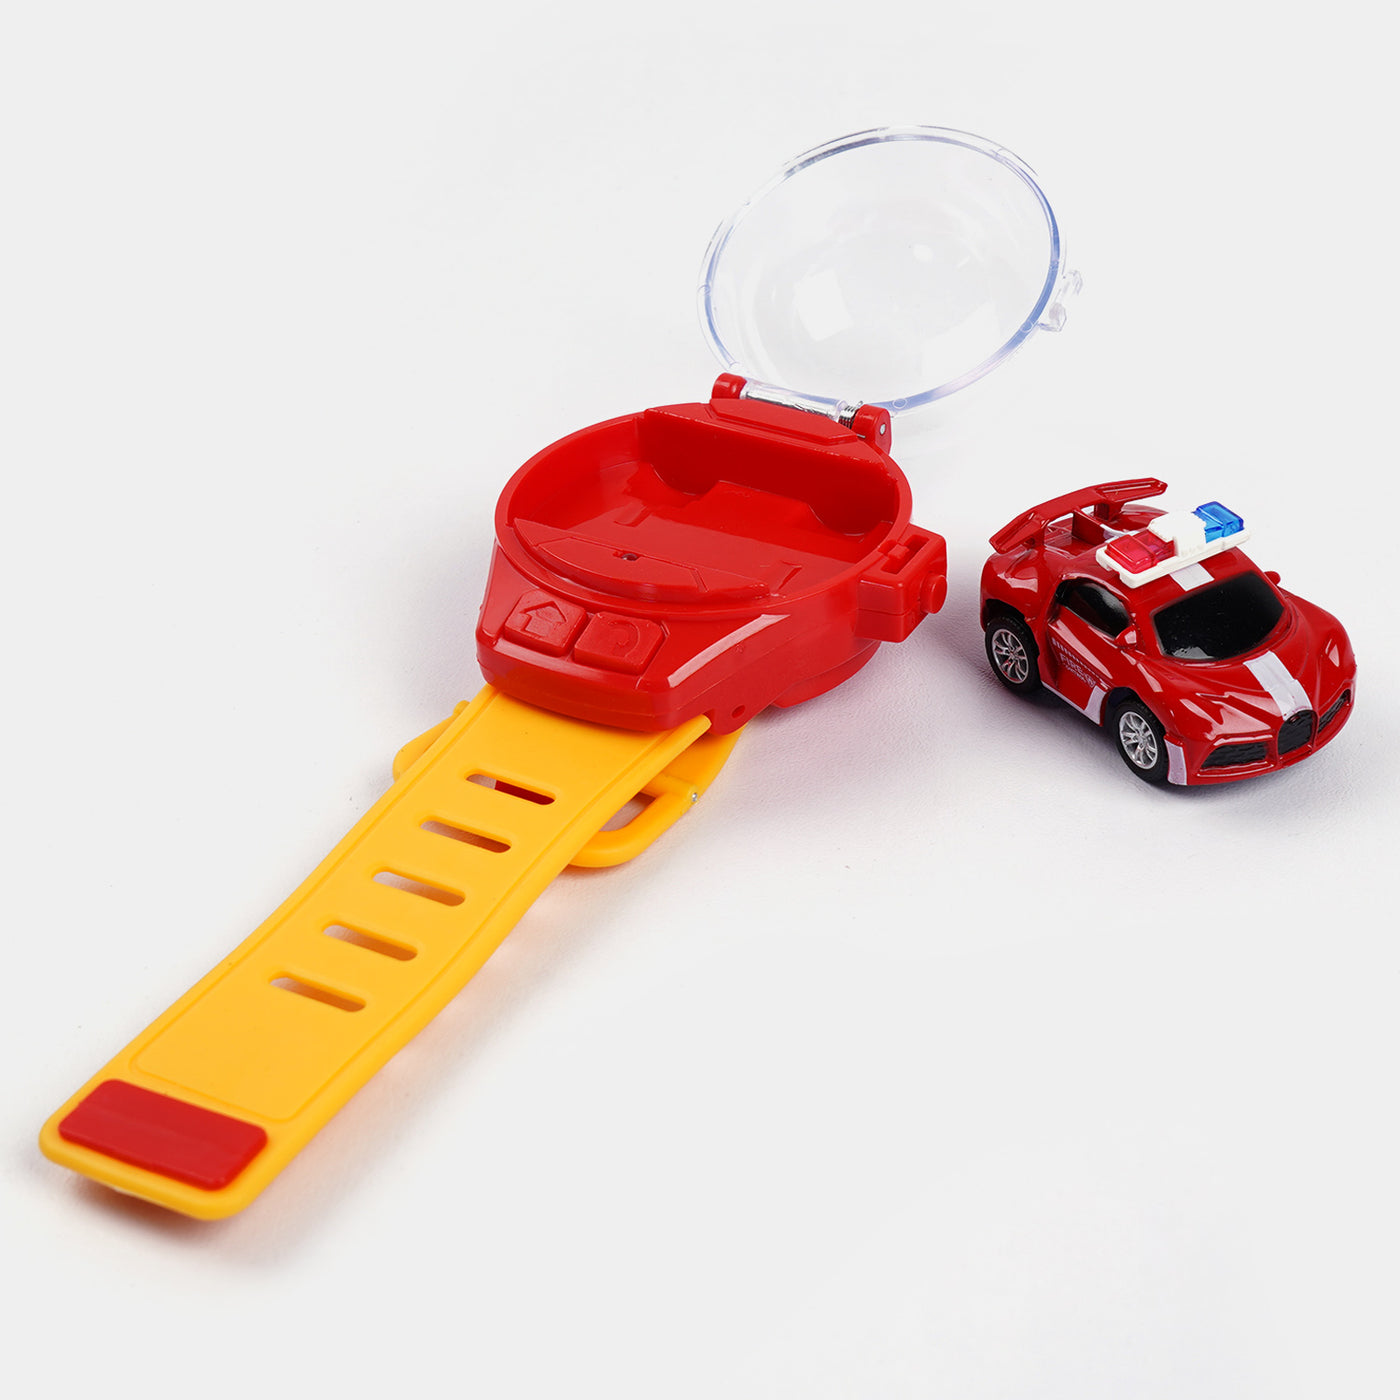 Mini Watch Remote Control Car - Red